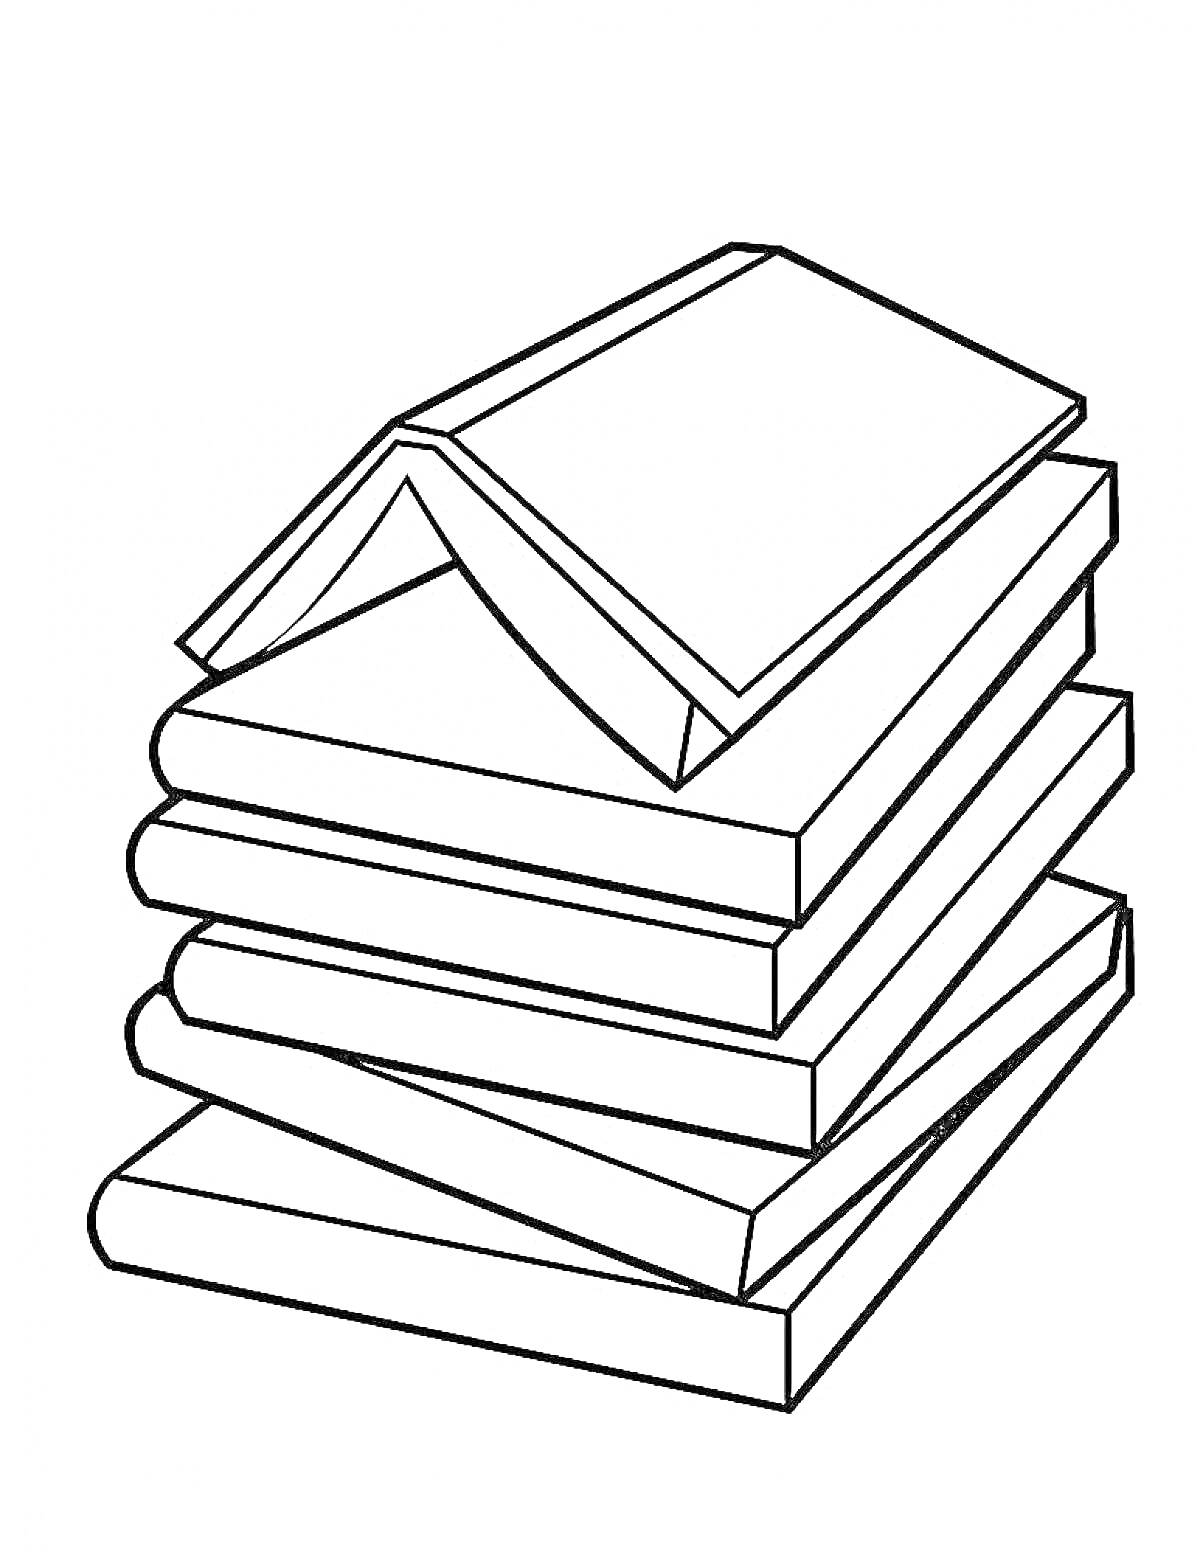 Раскраска Стопка книг с раскрытой книгой сверху